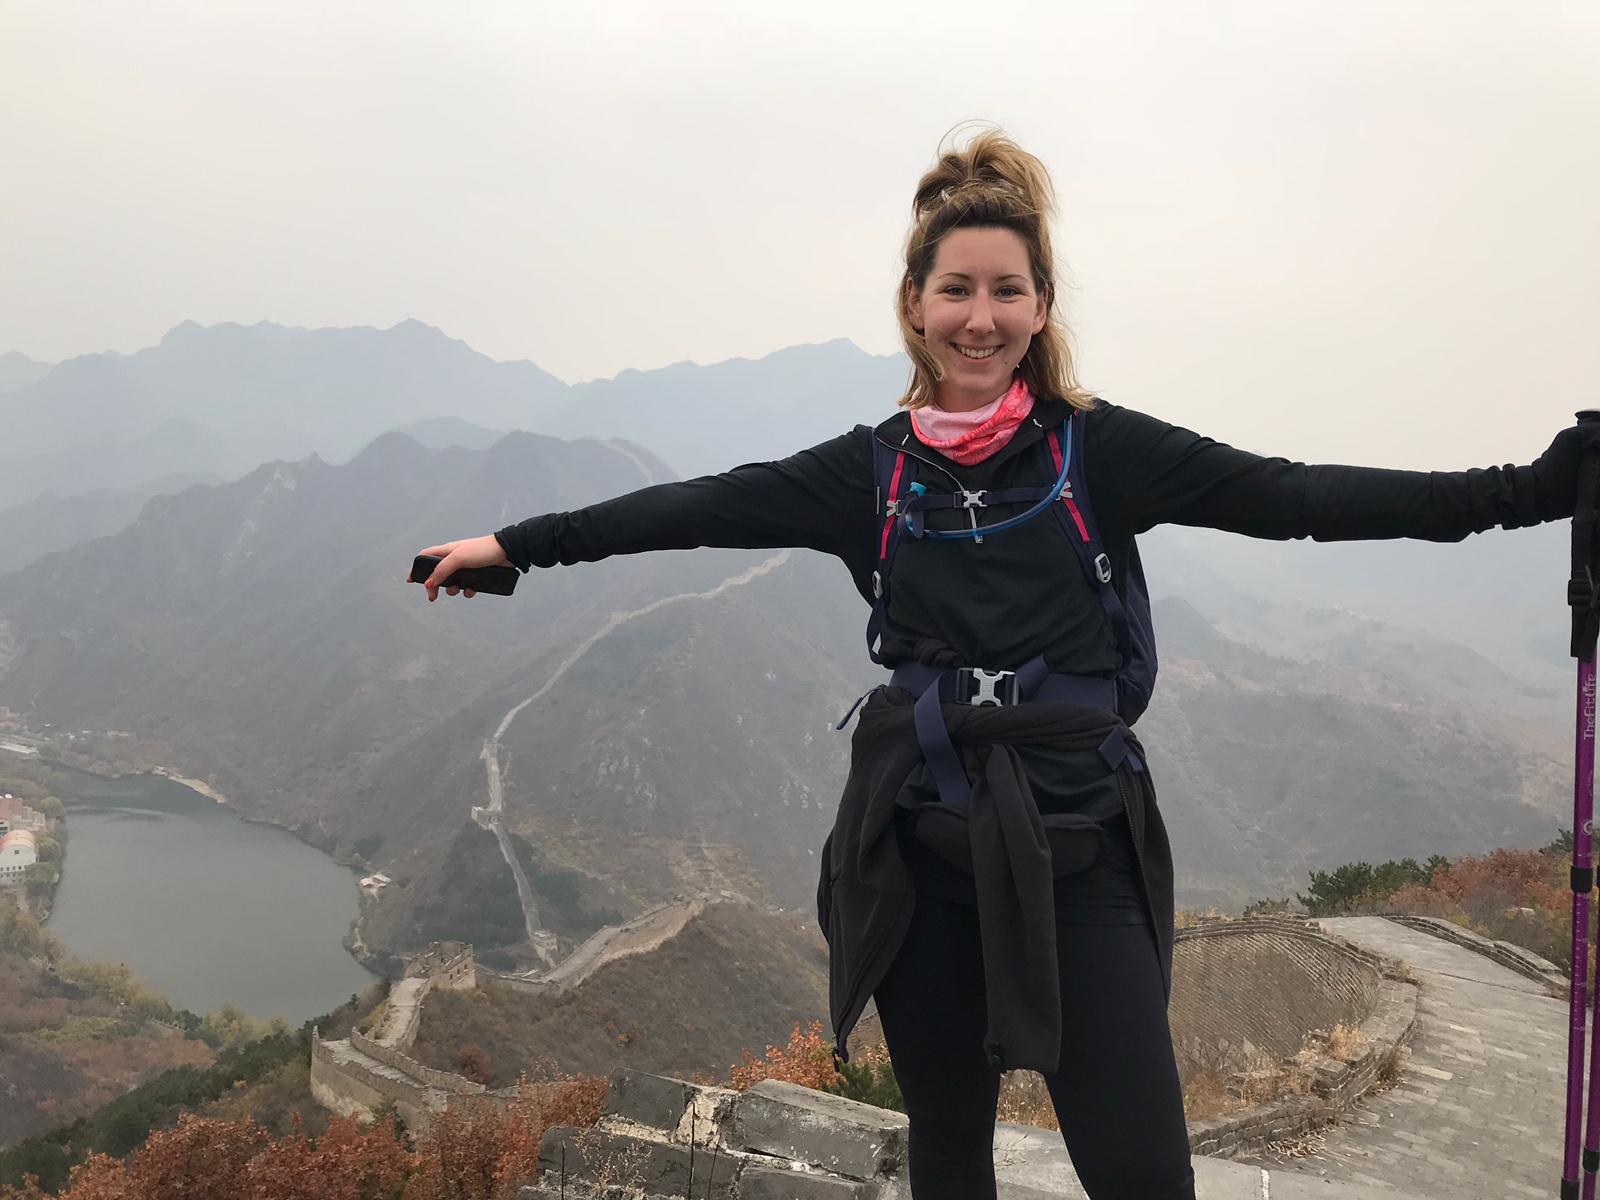 Chloe at the Great Wall of China